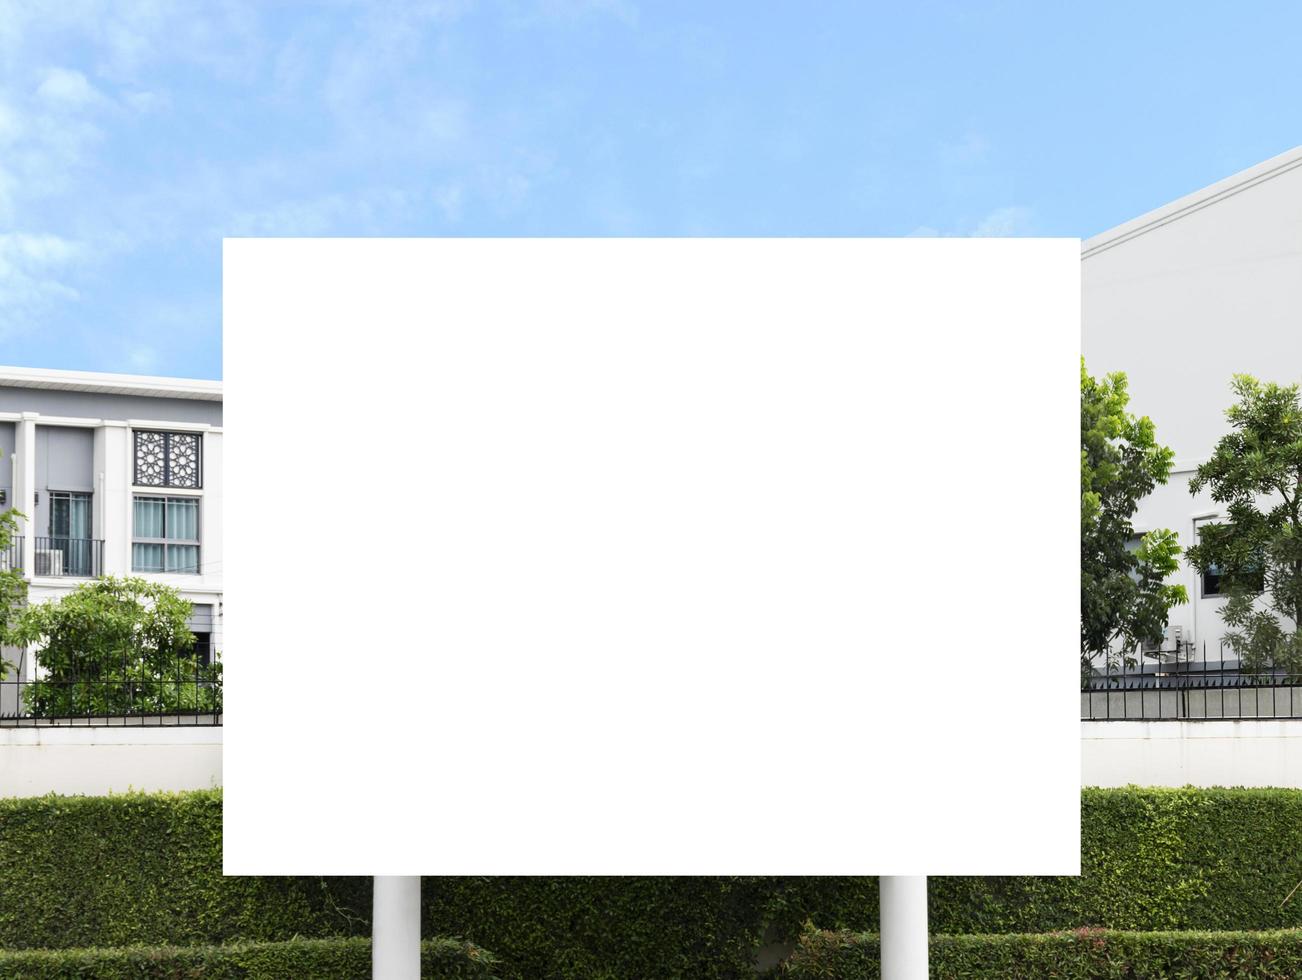 panneau d'affichage extérieur avec maquette de fond blanc. chemin de détourage photo